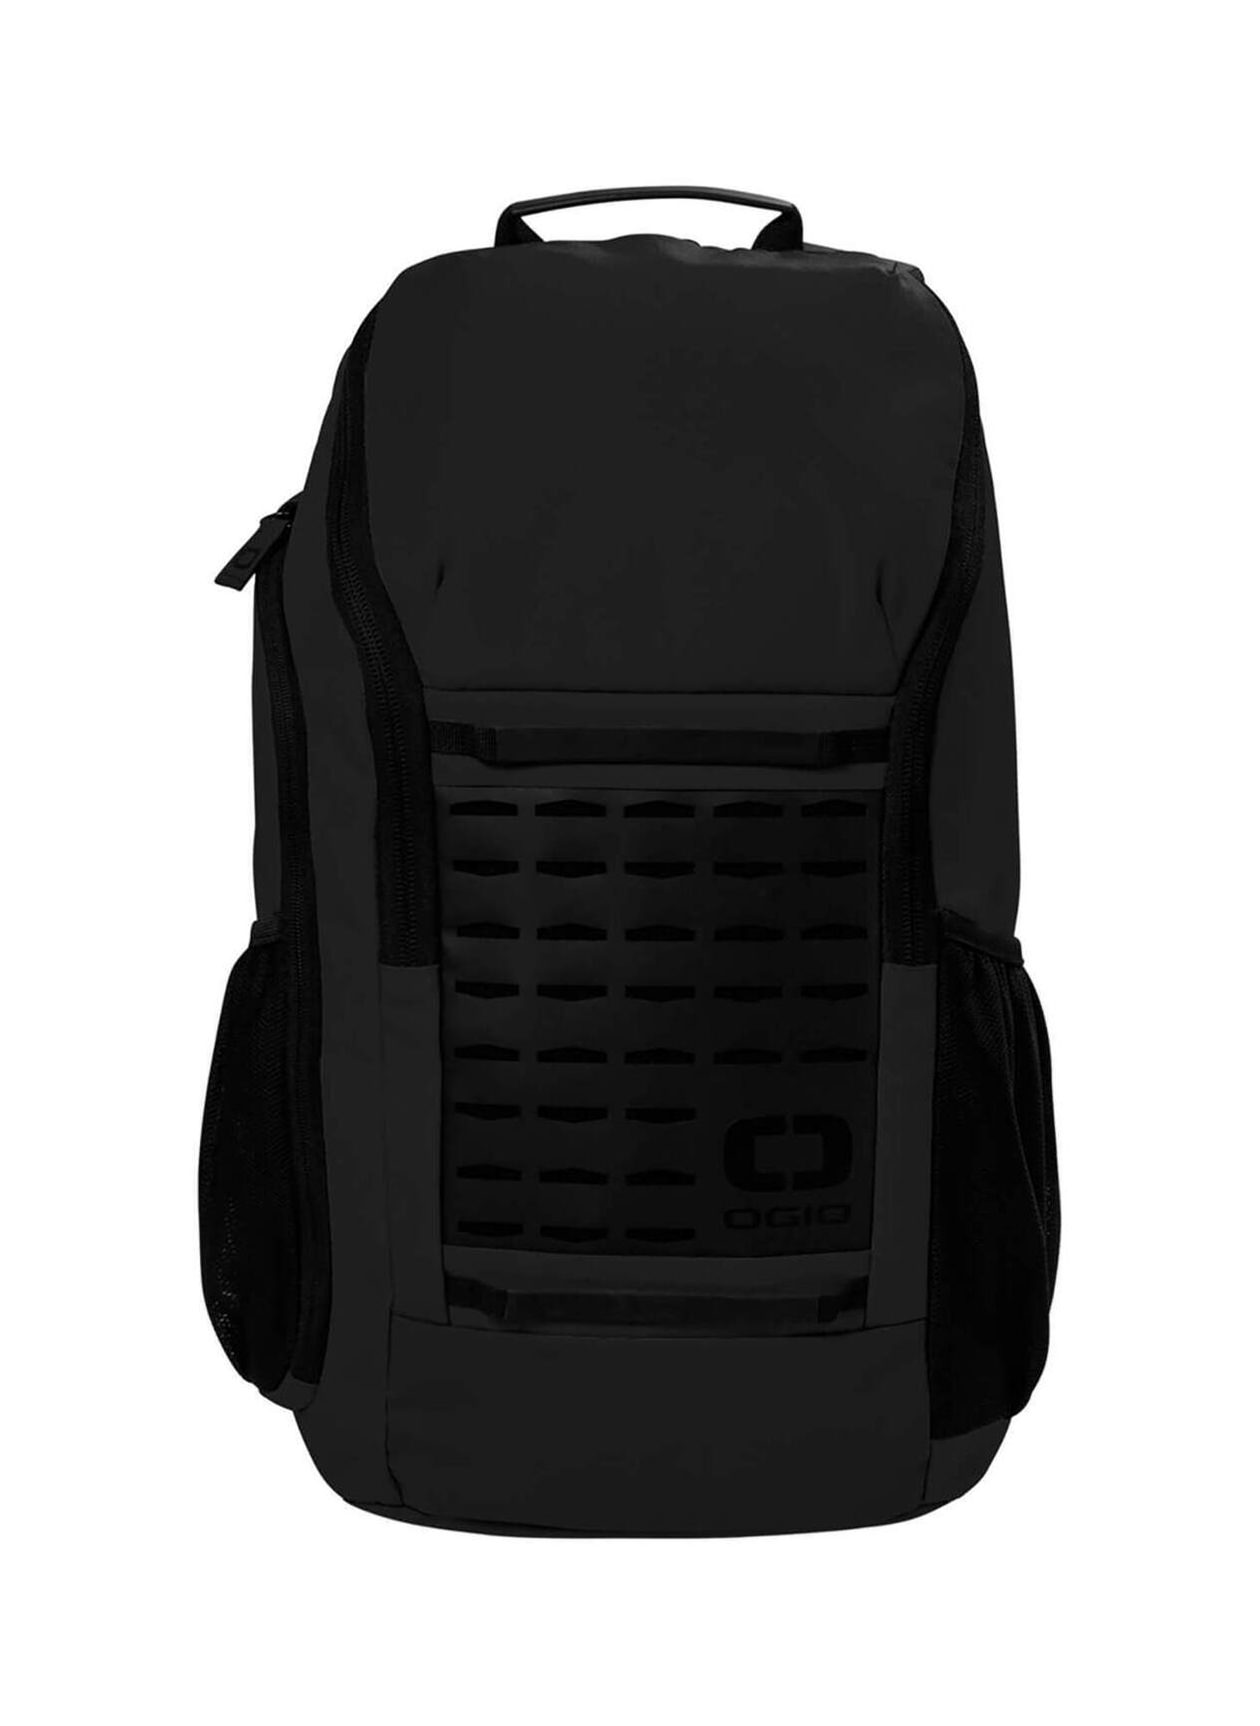 OGIO Blacktop Surplus Backpack